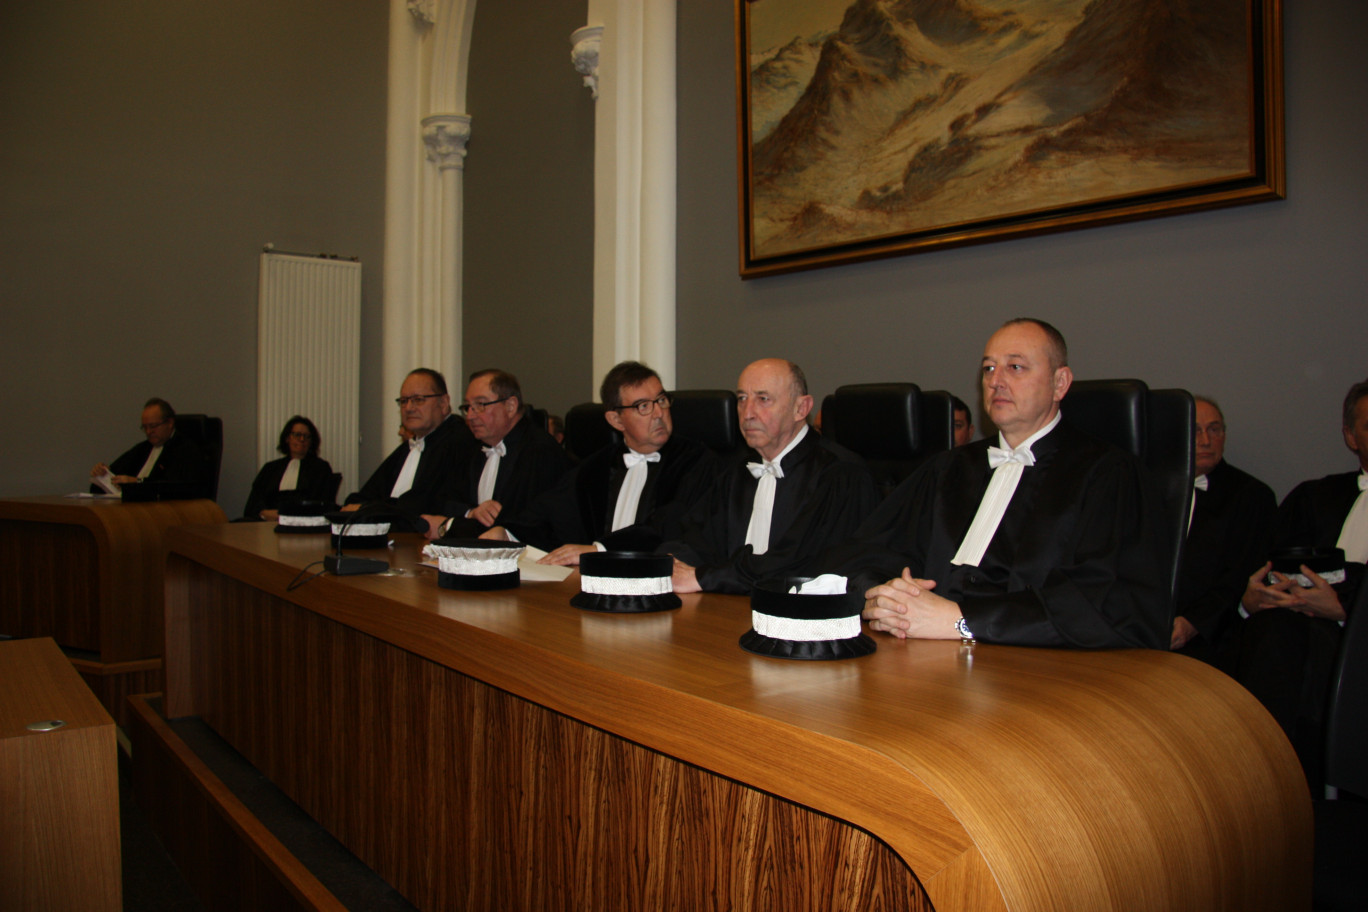 Le Tribunal de commerce de Boulogne-sur-Mer lors de l'audience solennelle.